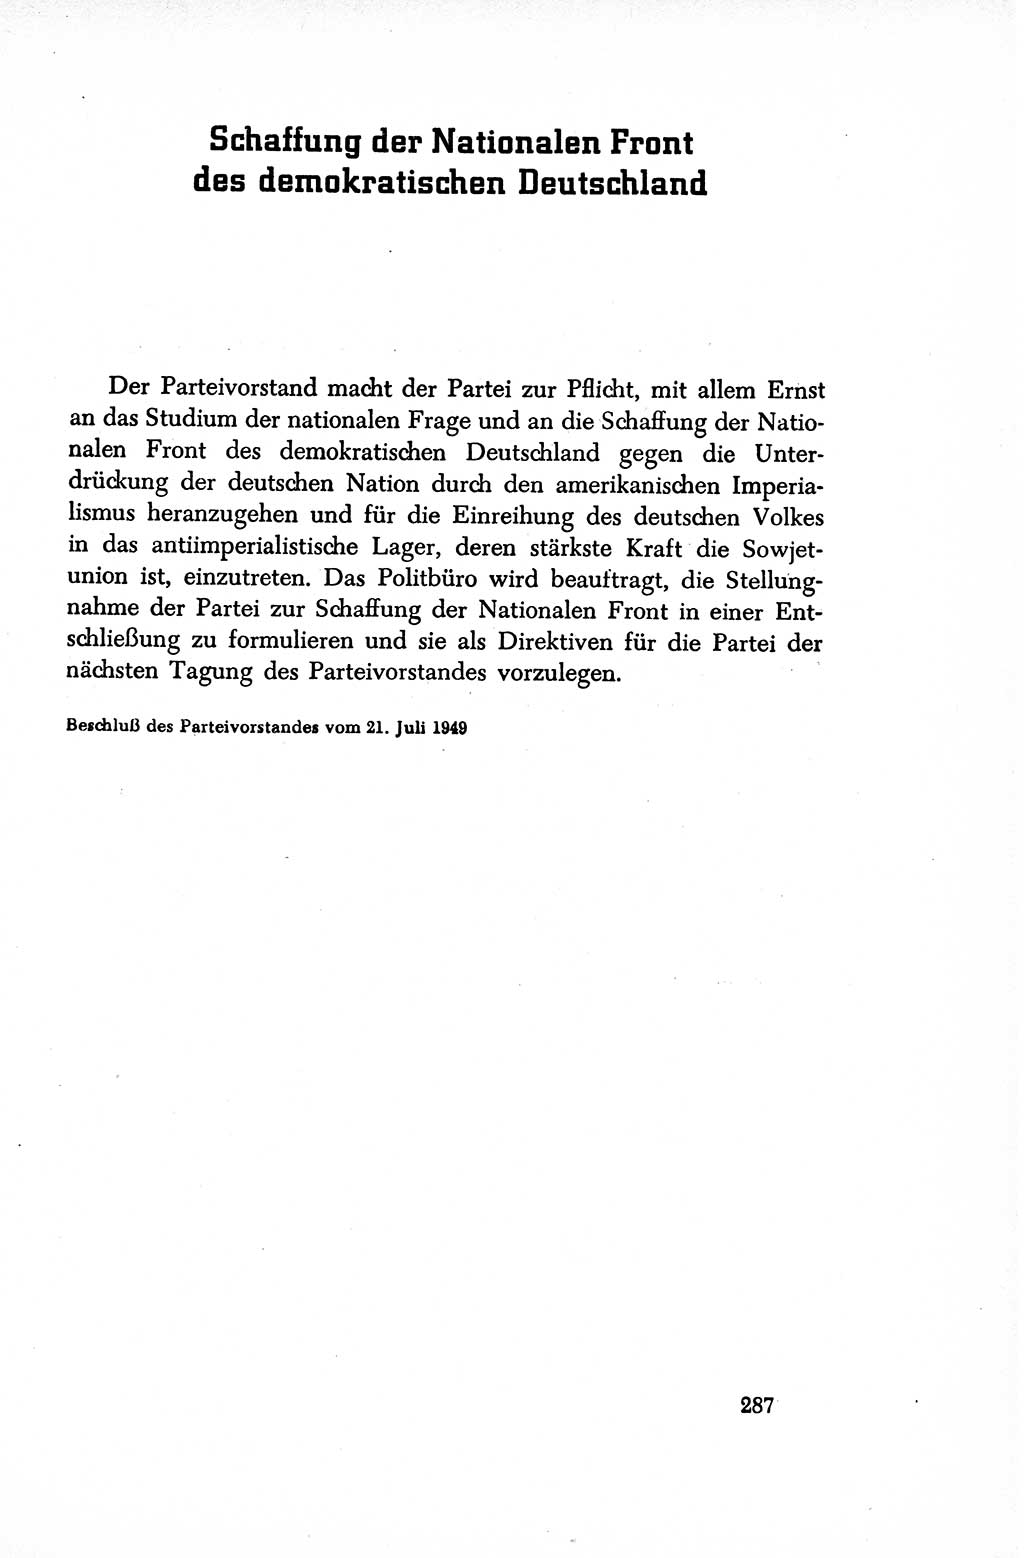 Dokumente der Sozialistischen Einheitspartei Deutschlands (SED) [Sowjetische Besatzungszone (SBZ) Deutschlands/Deutsche Demokratische Republik (DDR)] 1948-1950, Seite 287 (Dok. SED SBZ Dtl. DDR 1948-1950, S. 287)